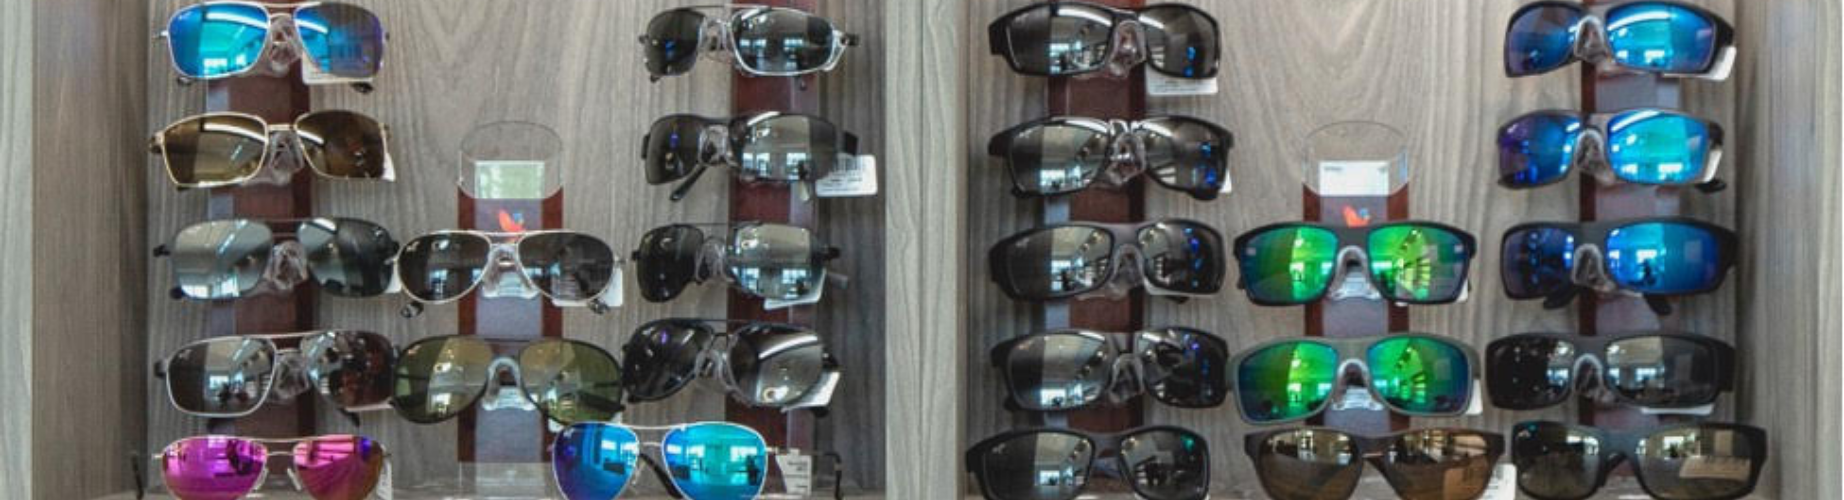 prescription safety glasses on a shelf